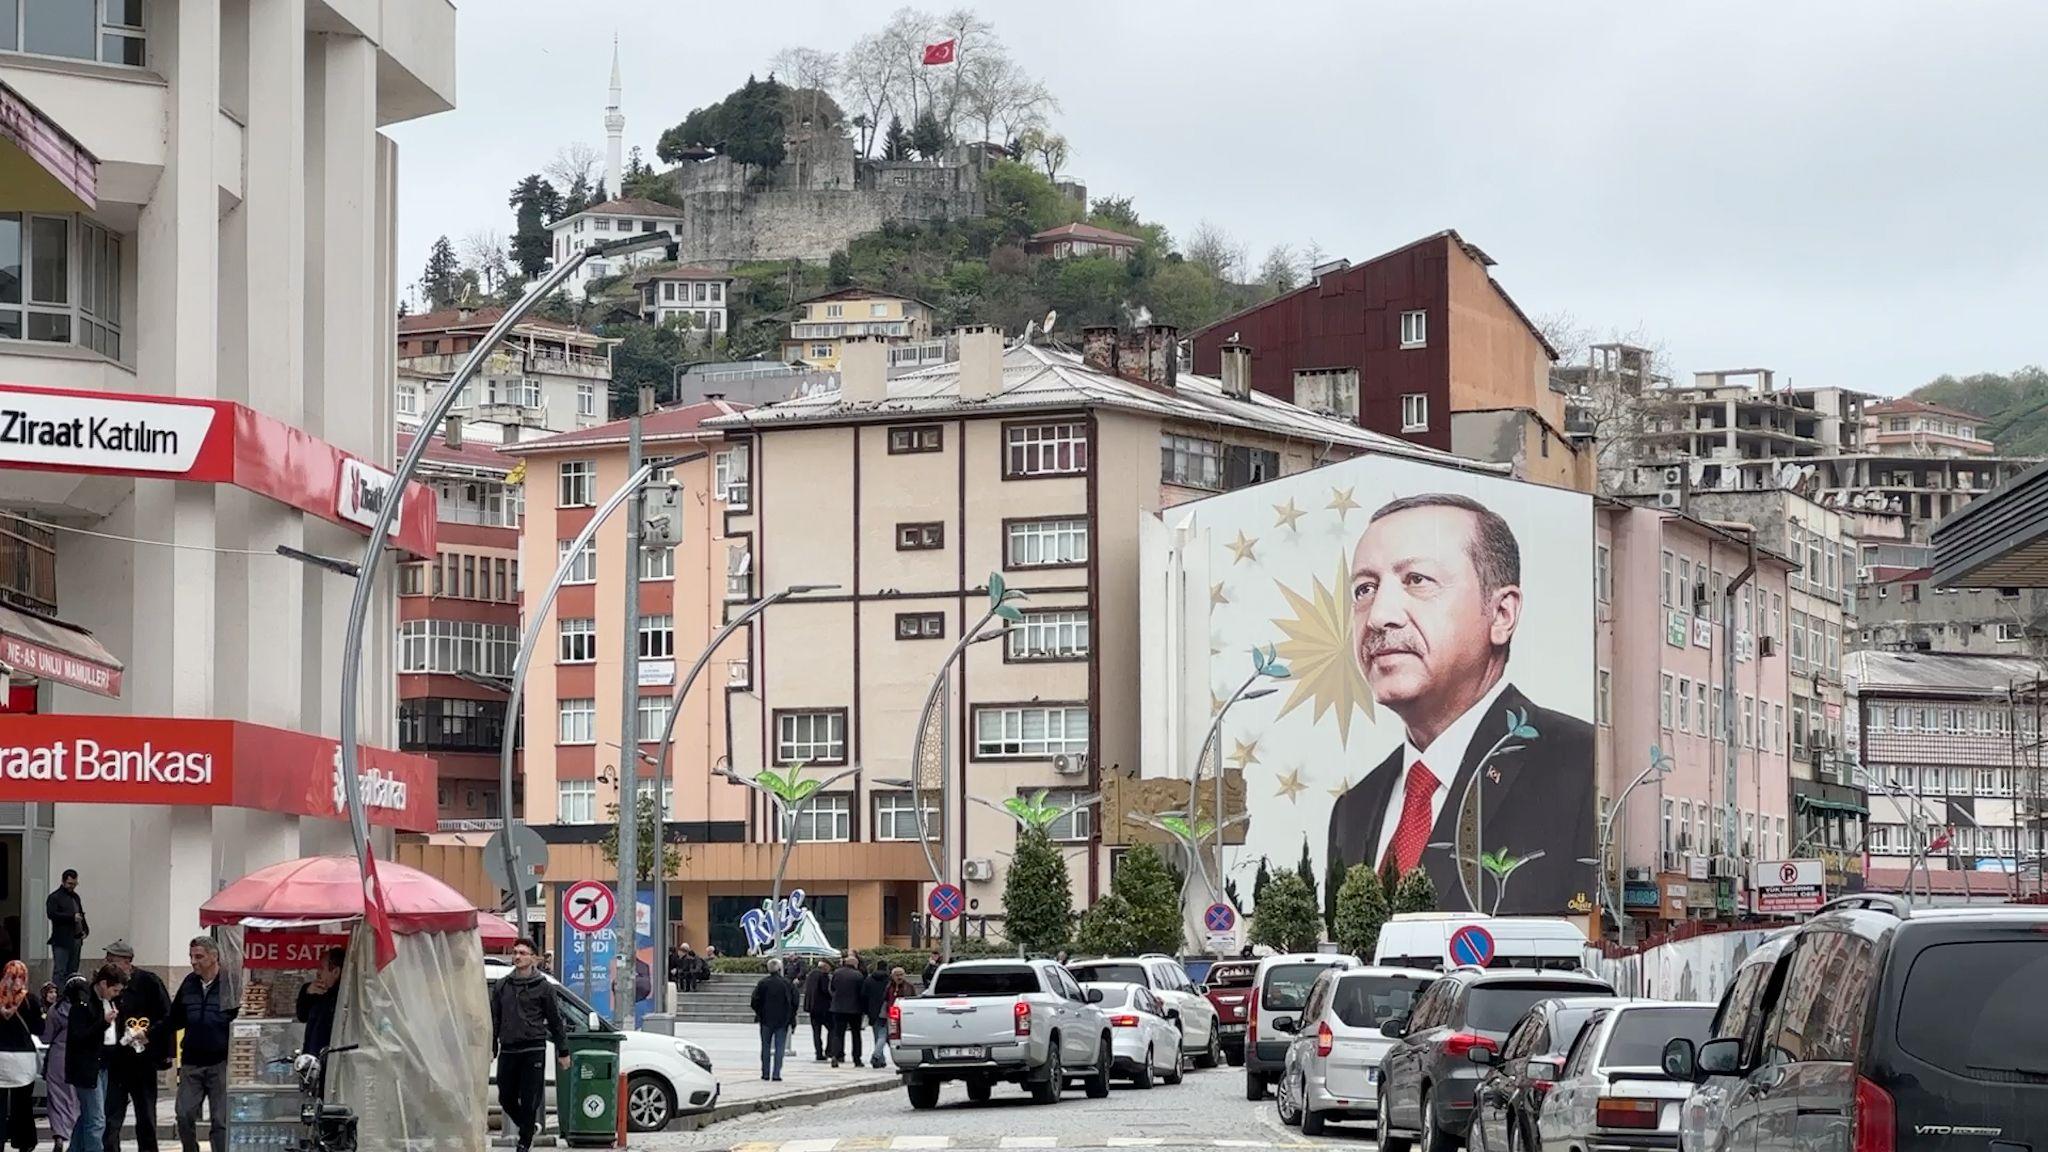 Erdogan, pe fațada unei clădiri din Rize, în provincia de origine a familiei lui. Foto: Carolina Drüten